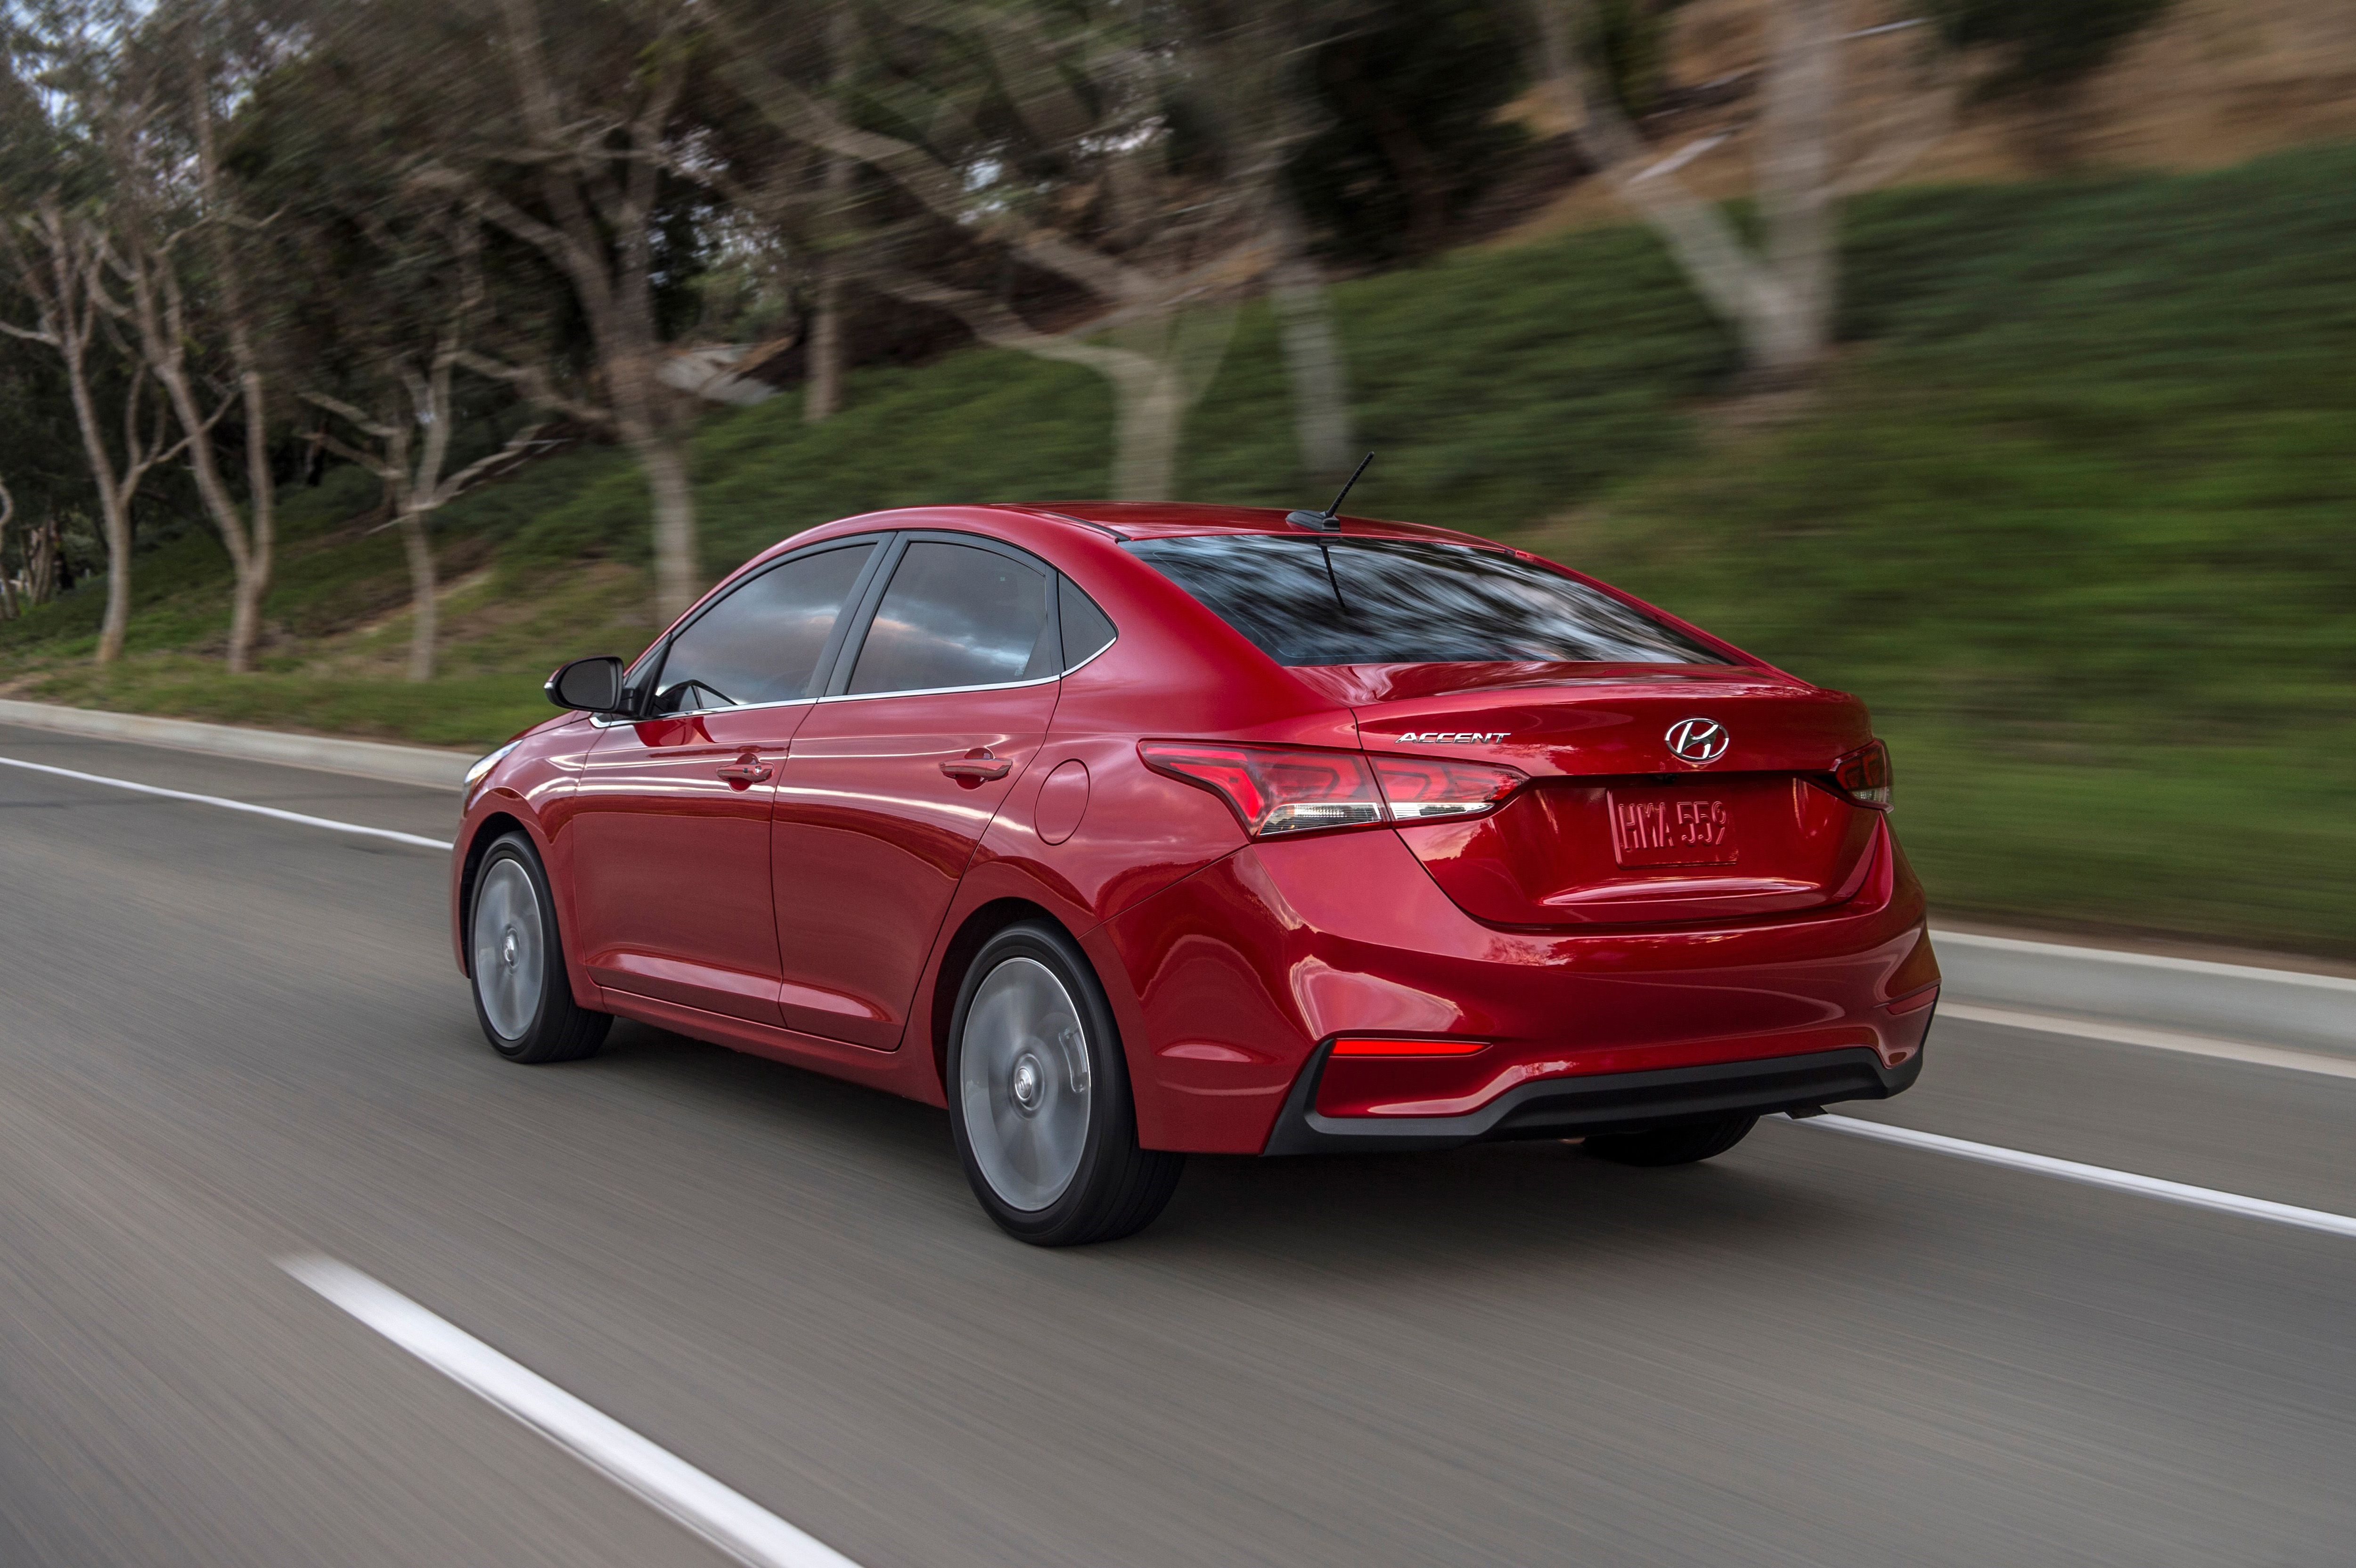 2018 Hyundai Accent SE Review: Straightforward, no-nonsense